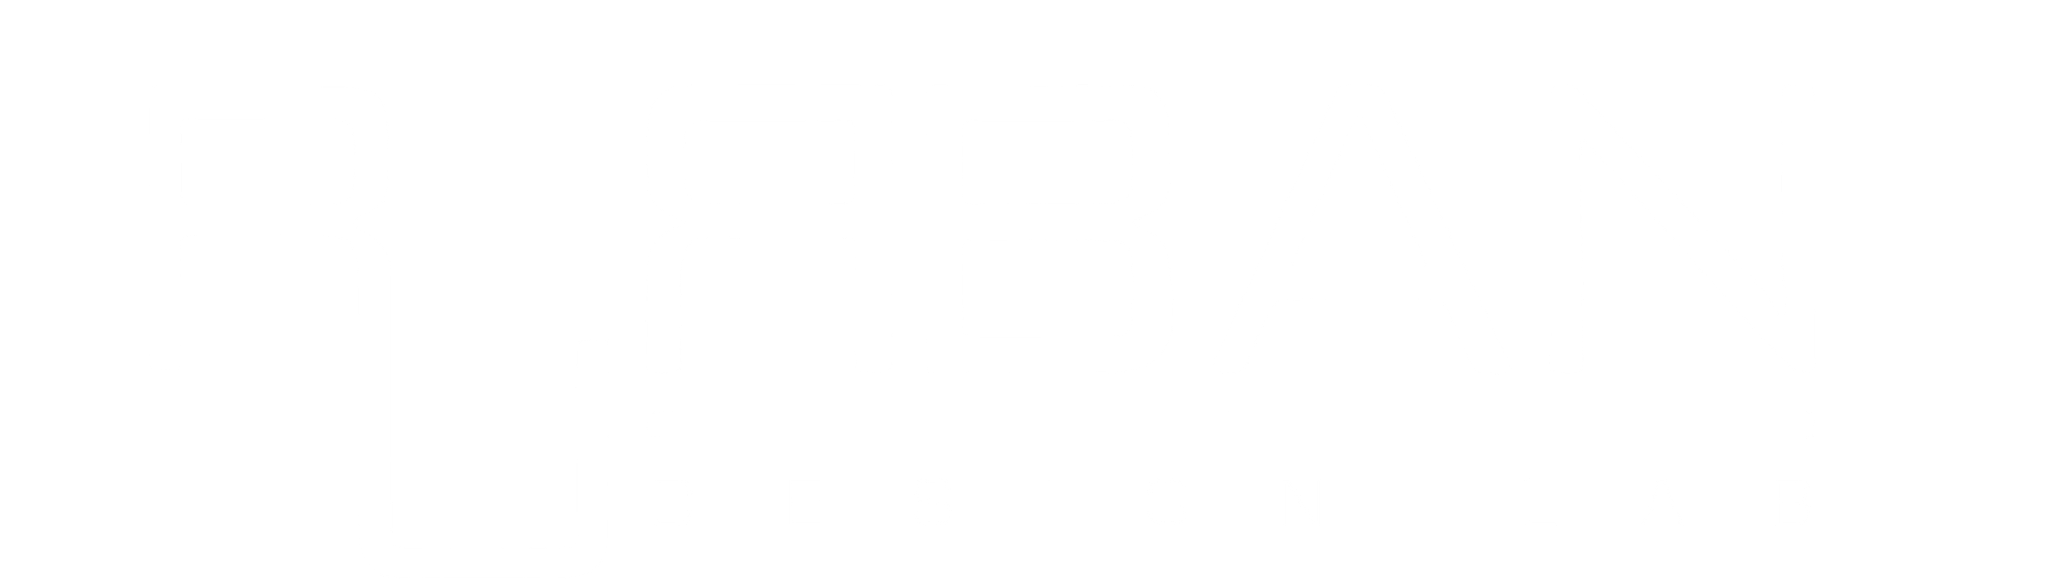 Rurban Design Lab